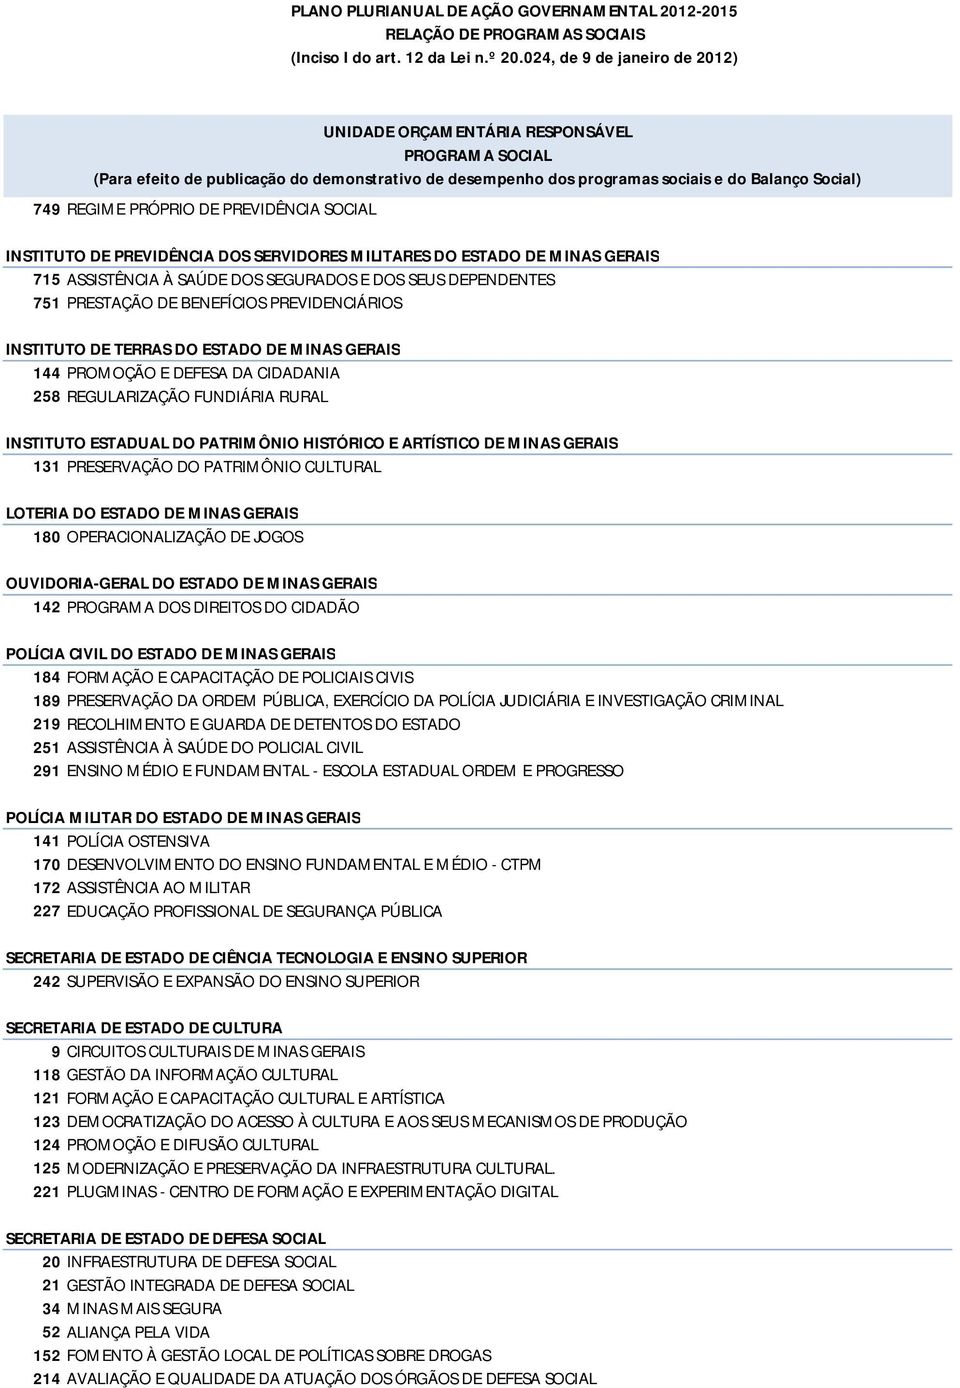 MINAS GERAIS 131 PRESERVAÇÃO DO PATRIMÔNIO CULTURAL LOTERIA DO ESTADO DE MINAS GERAIS 180 OPERACIONALIZAÇÃO DE JOGOS OUVIDORIA-GERAL DO ESTADO DE MINAS GERAIS 142 PROGRAMA DOS DIREITOS DO CIDADÃO